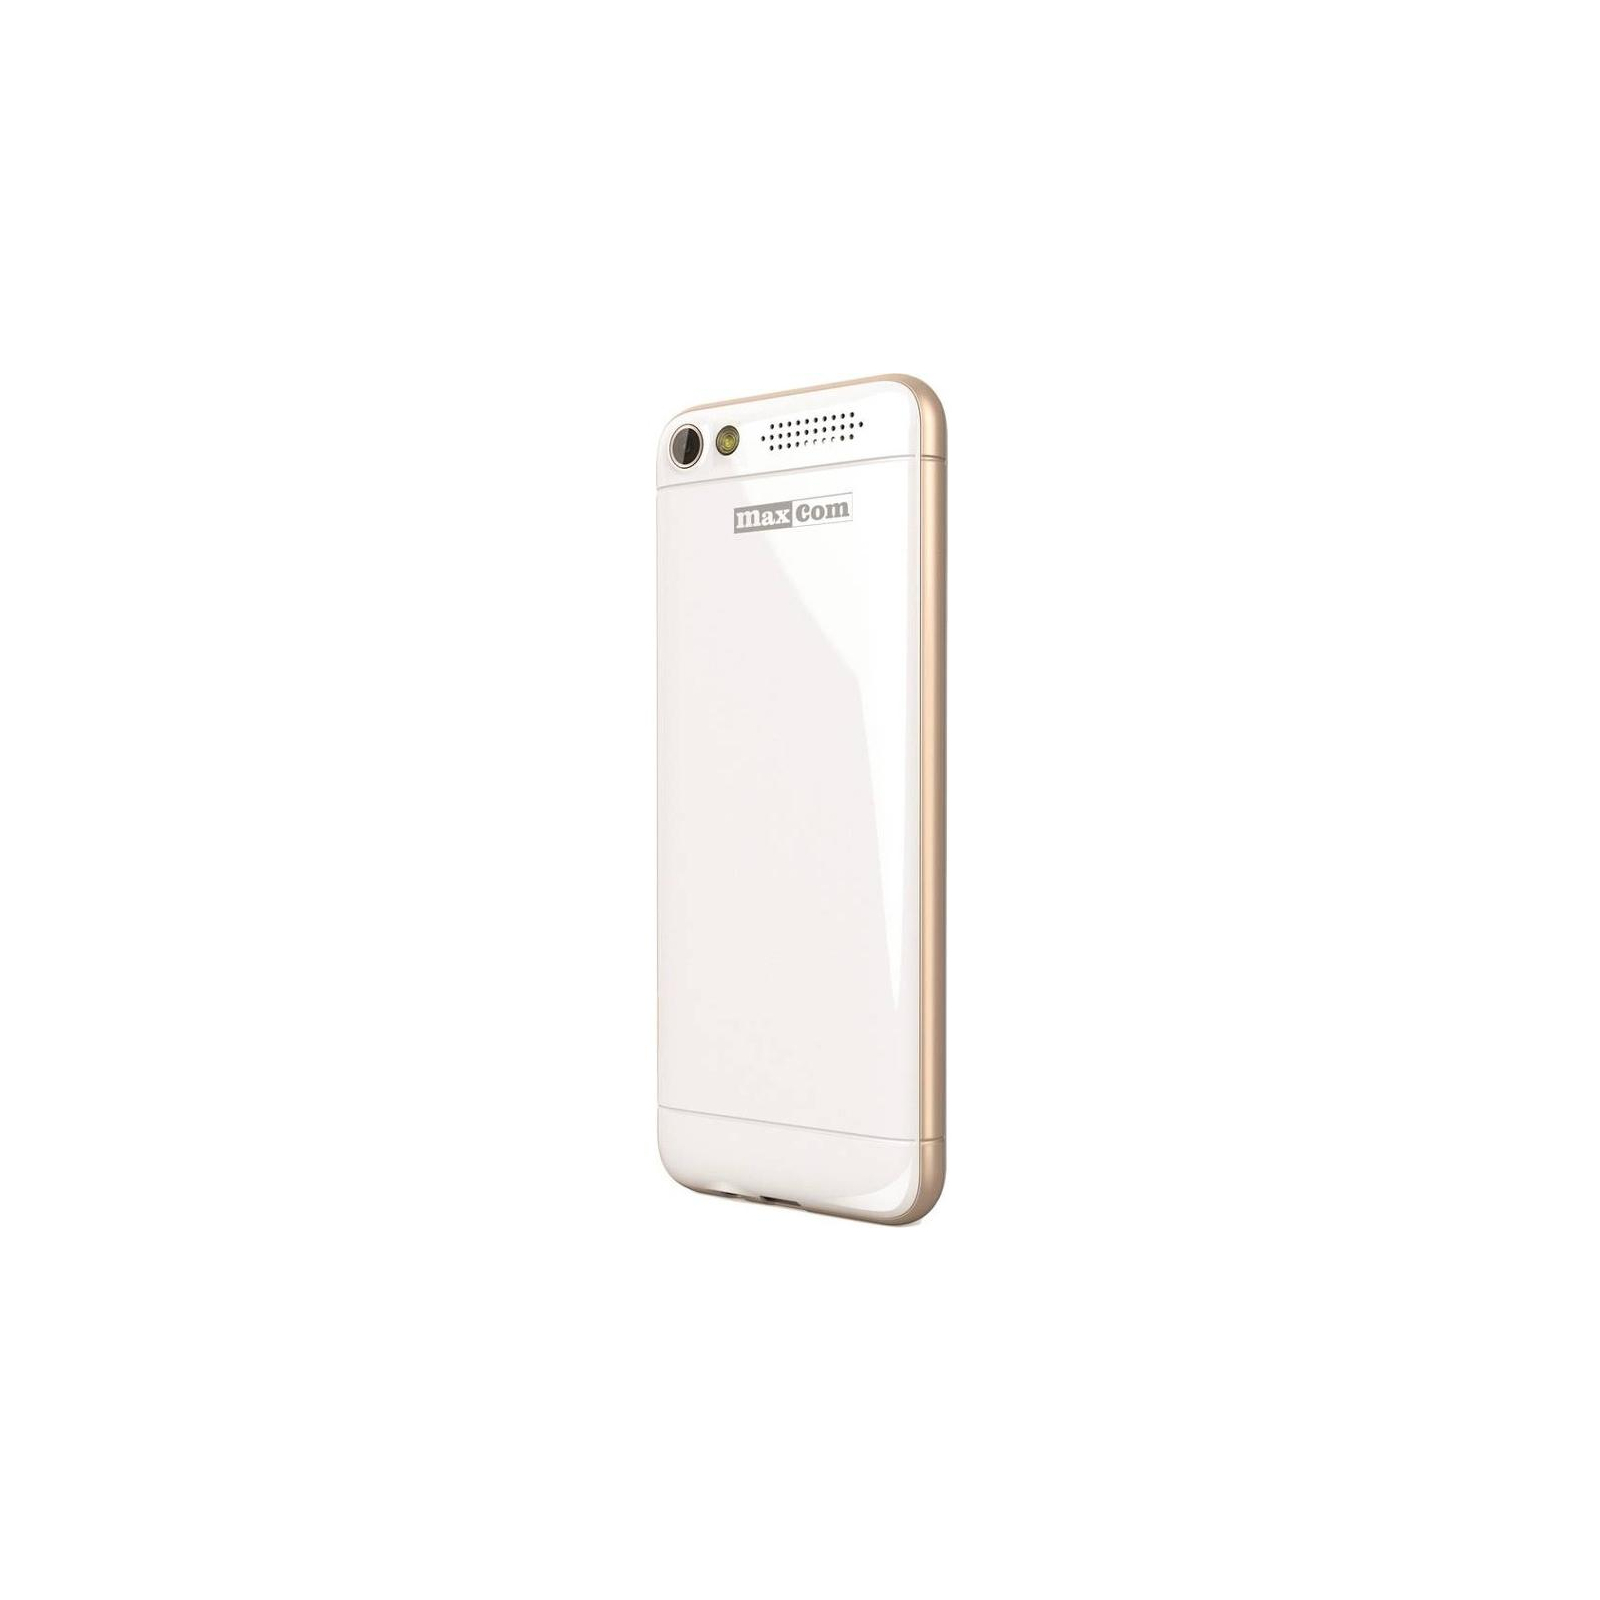 Мобильный телефон Maxcom MM136 White-Gold (5908235973500) изображение 2